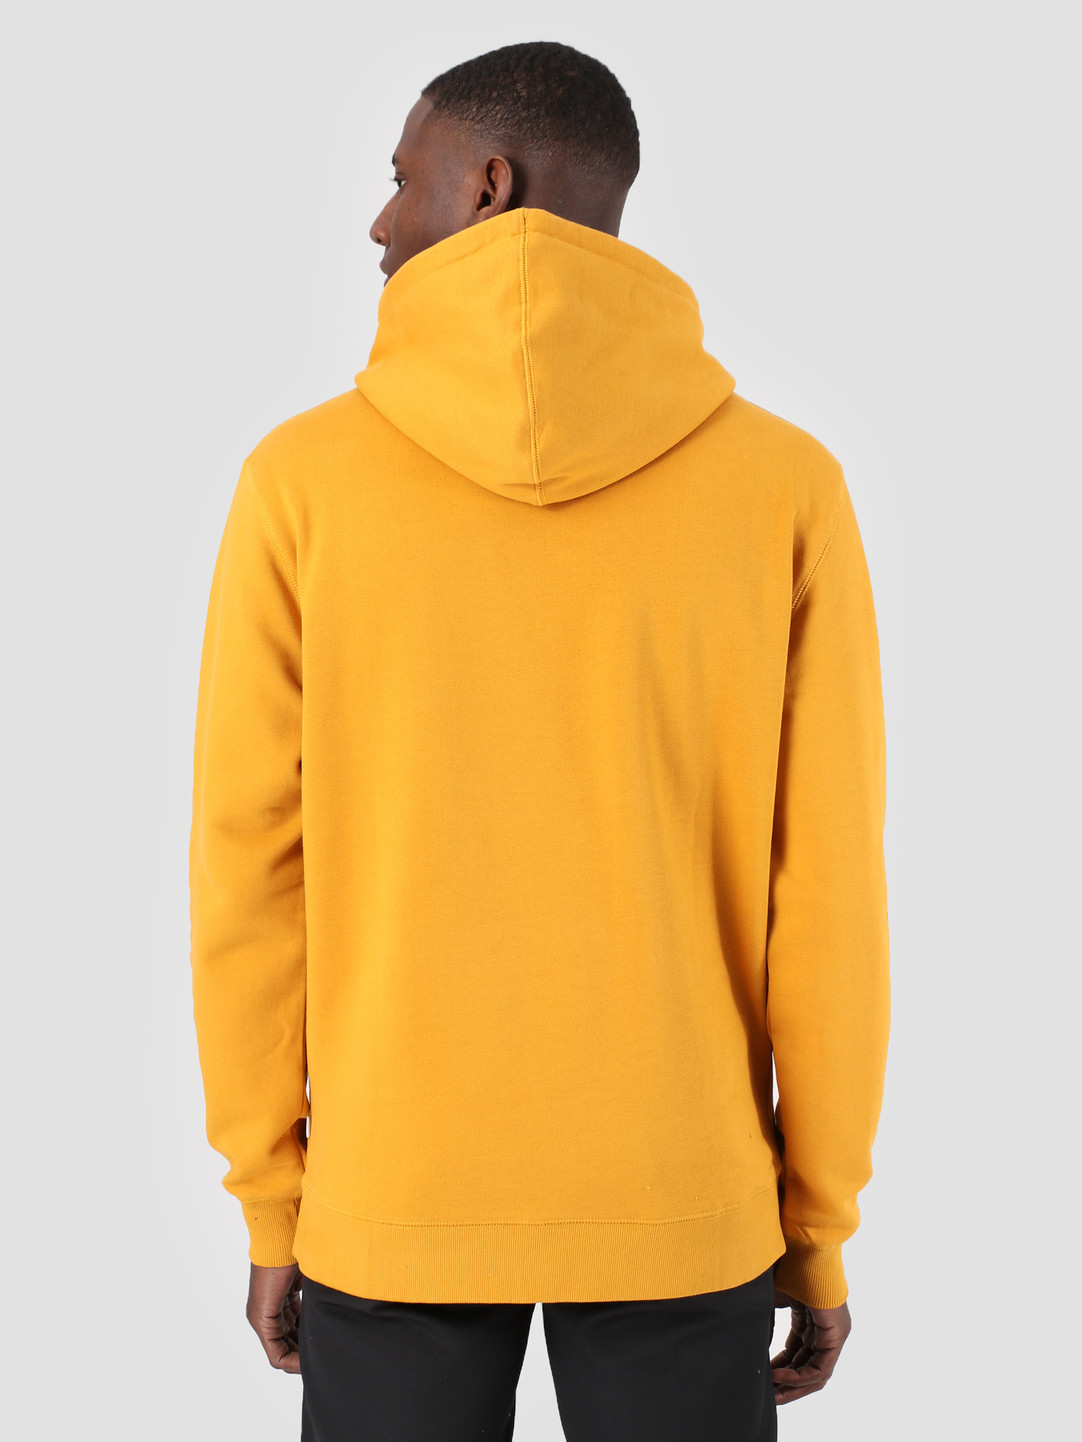 mustard yellow hoodie